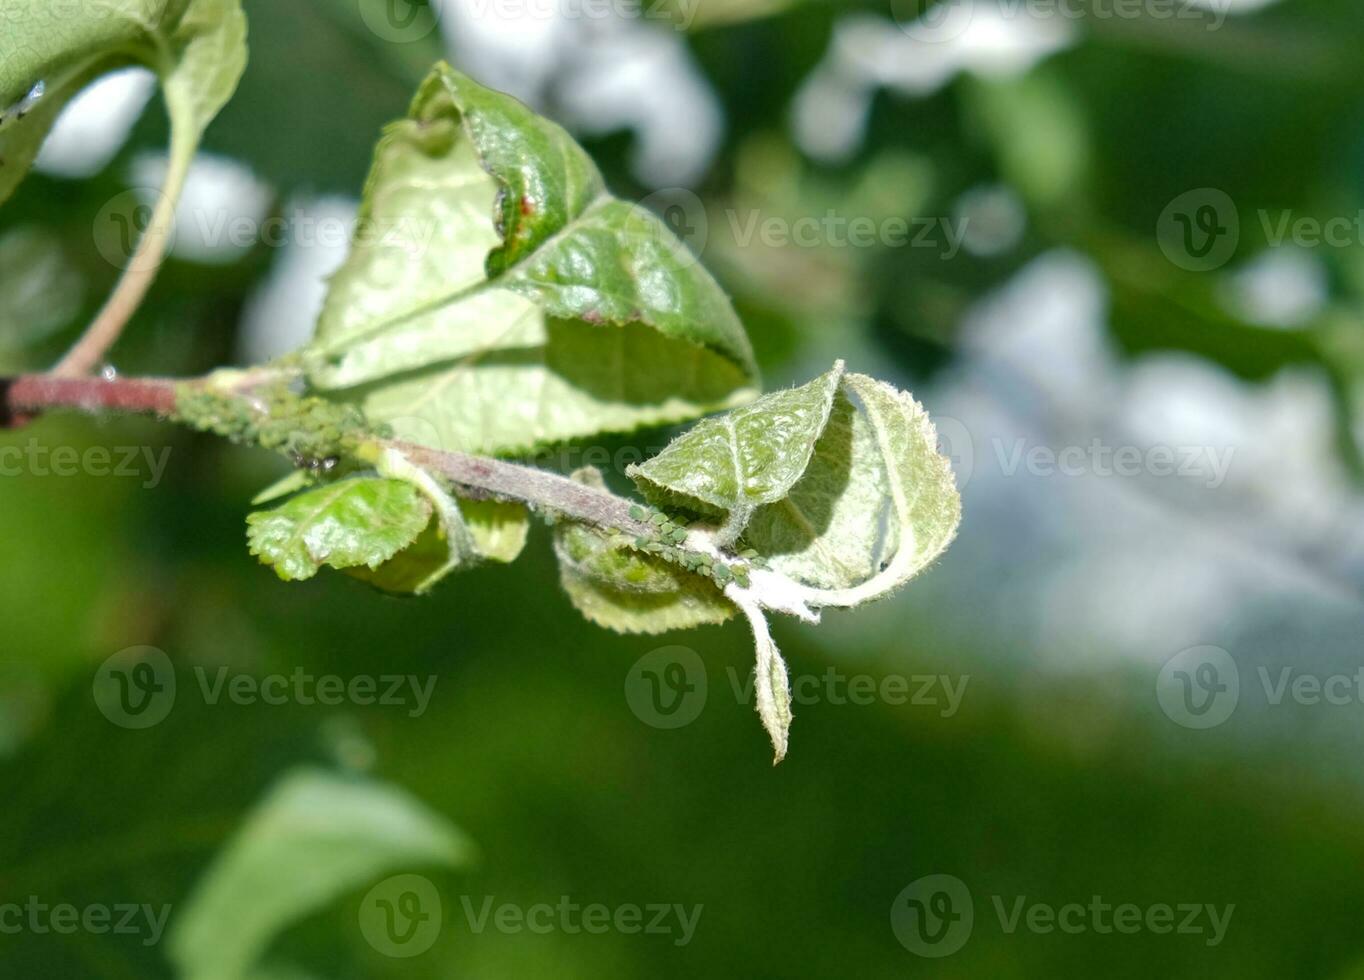 detailopname van bladluis kolonie - bladluizen en mieren - Aan Aple boom blad. macro foto van insect plaag - fabriek luizen, bladluis, zwarte vlieg of witte vlieg - zuigen sap van fabriek.